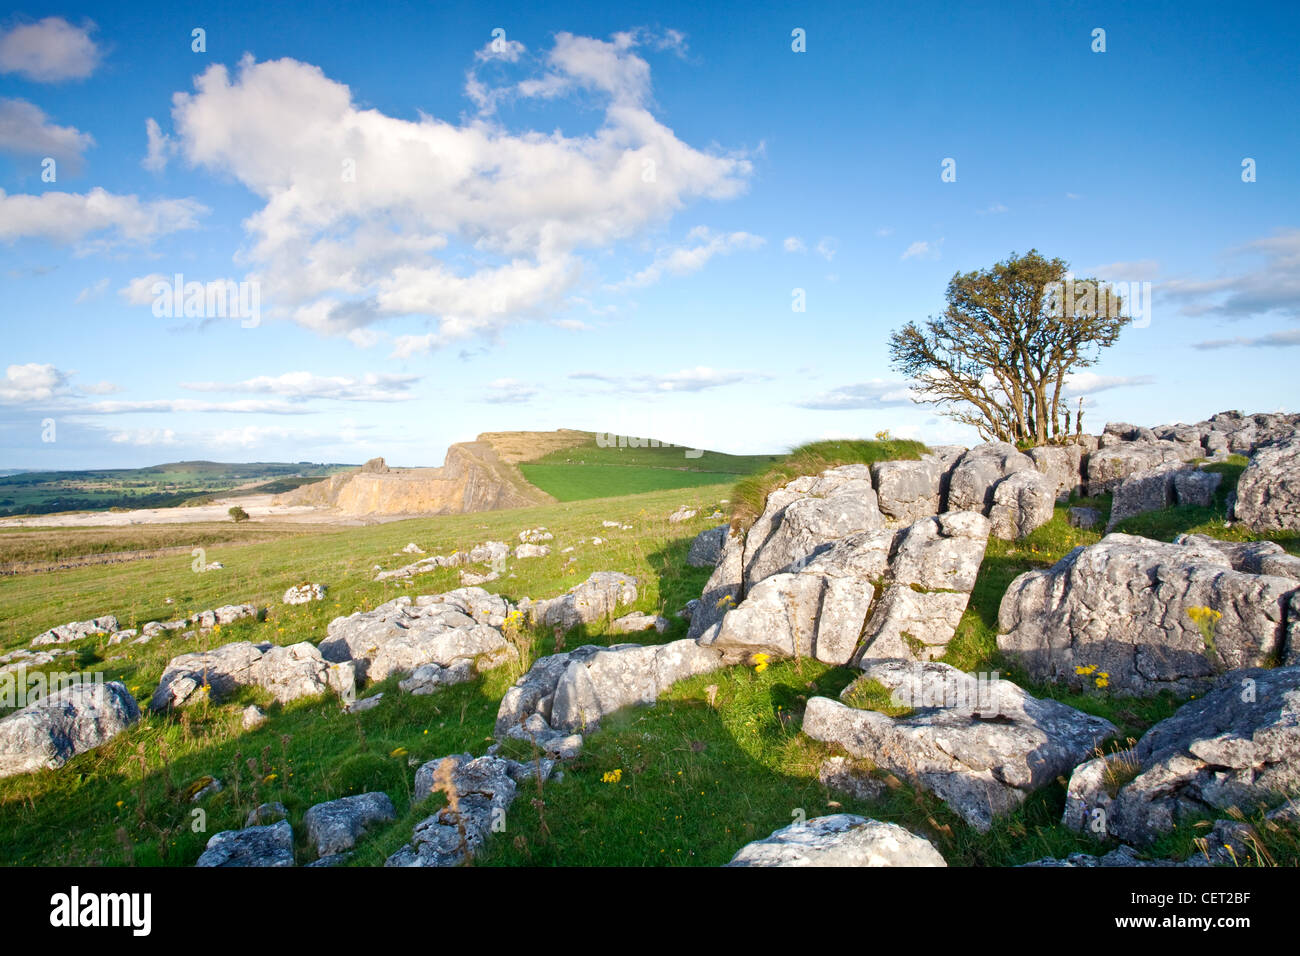 Pavimentazione in pietra calcarea e un albero in bianco area di picco del Parco Nazionale di Peak District. Foto Stock